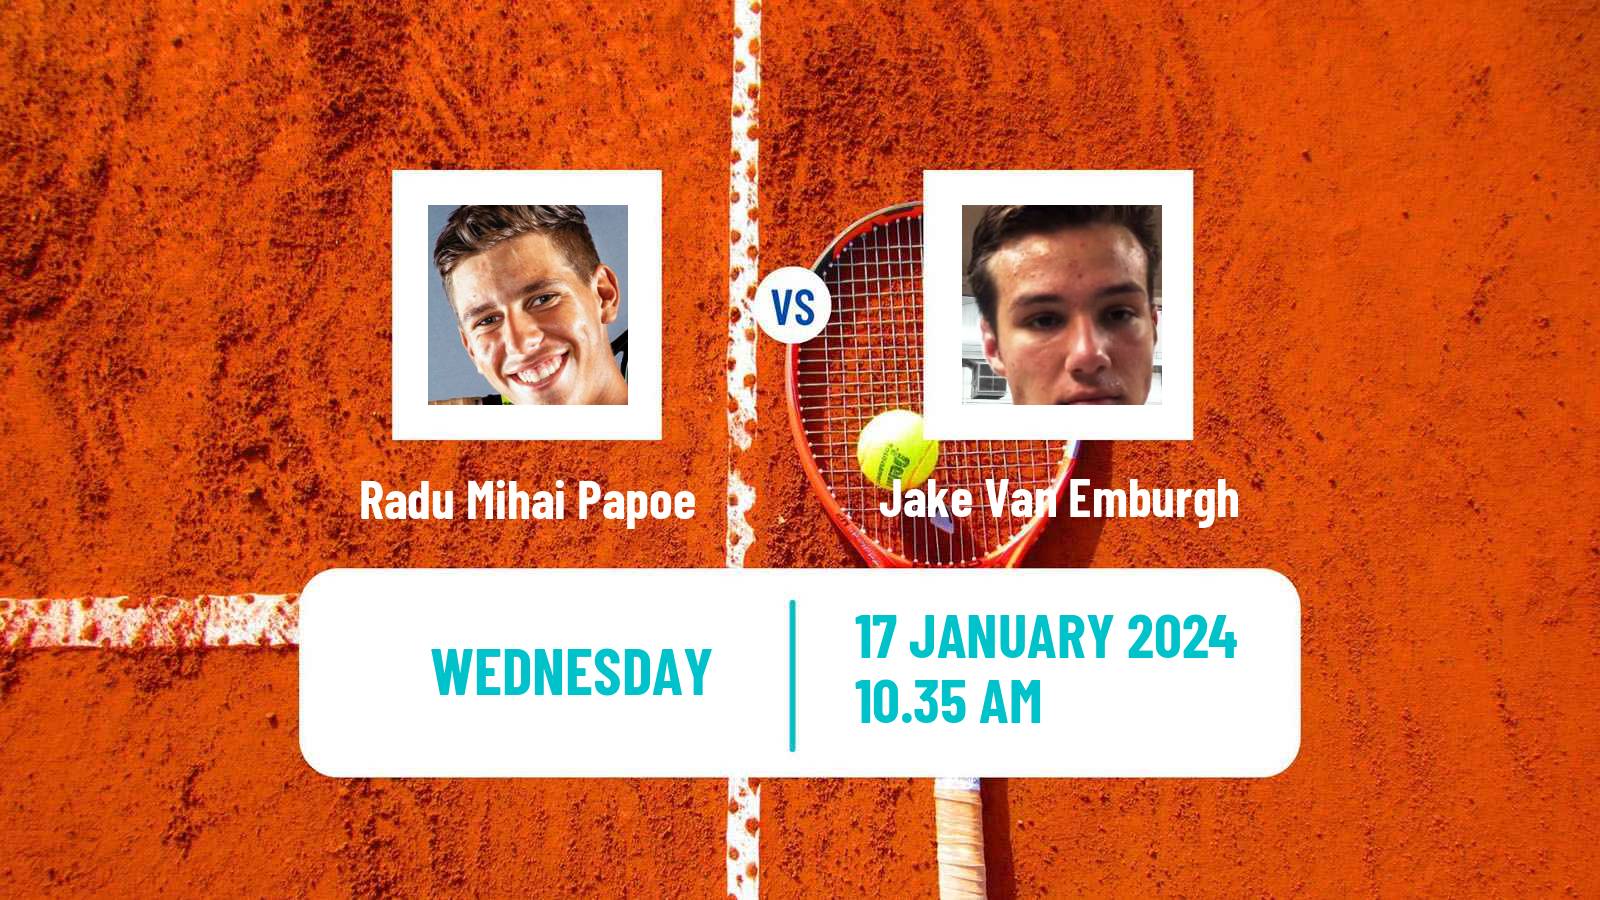 Tennis ITF M25 Ithaca Ny Men Radu Mihai Papoe - Jake Van Emburgh